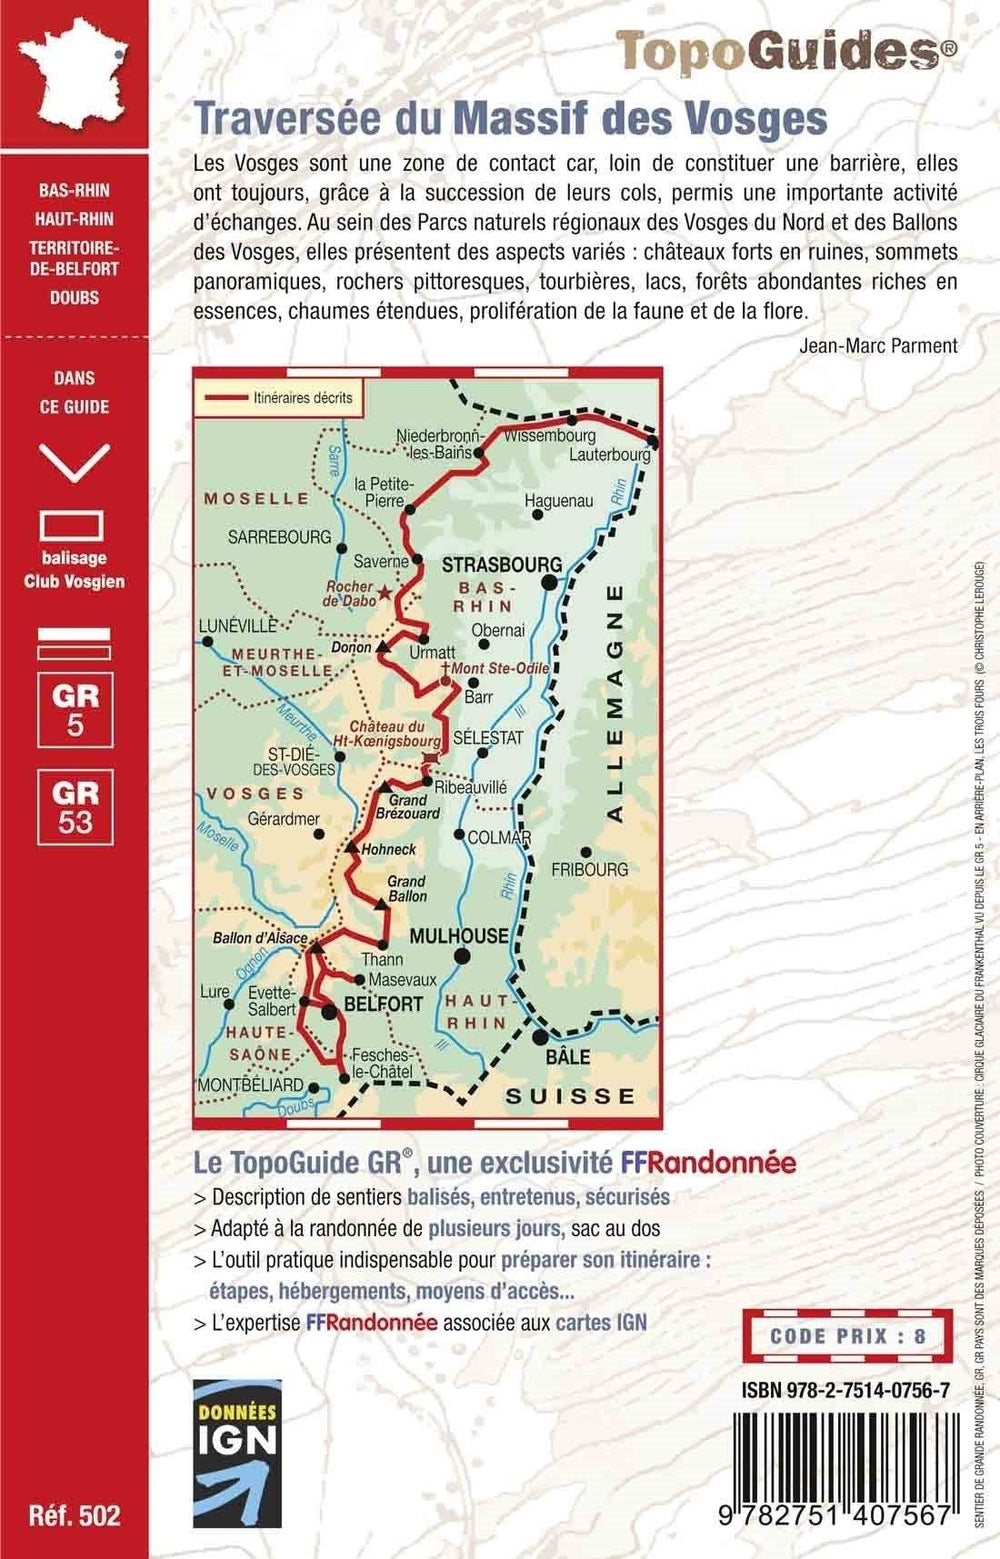 Topoguide de randonnée - Traversée du Massif des Vosges - GR5, GR53 | FFR guide de randonnée FFR - Fédération Française de Randonnée 